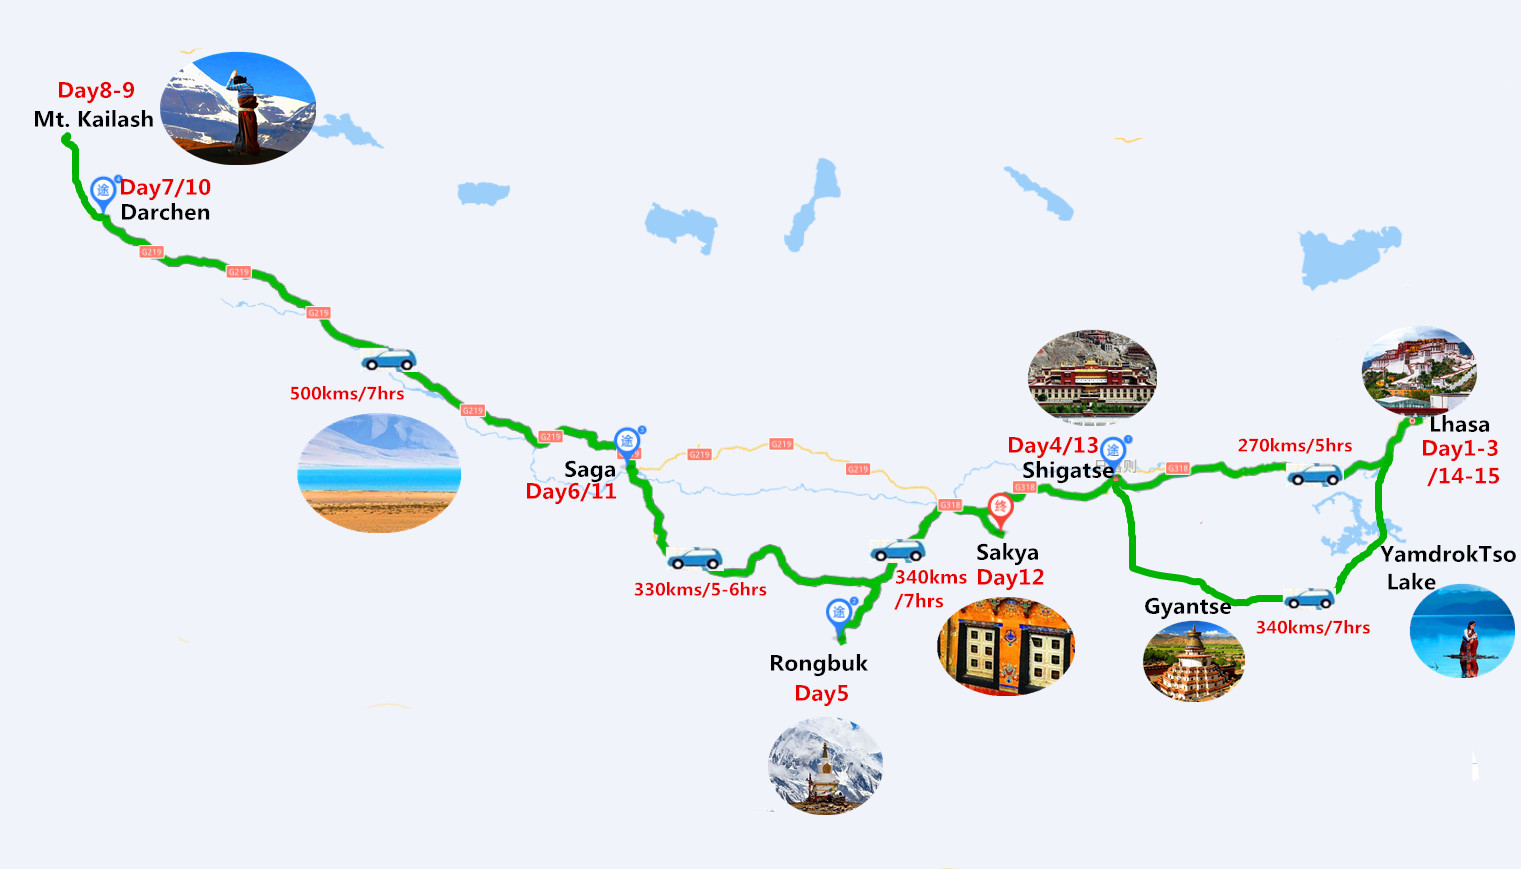 15 Days Lhasa to Kailash Pilgrimage Tour Travel Map